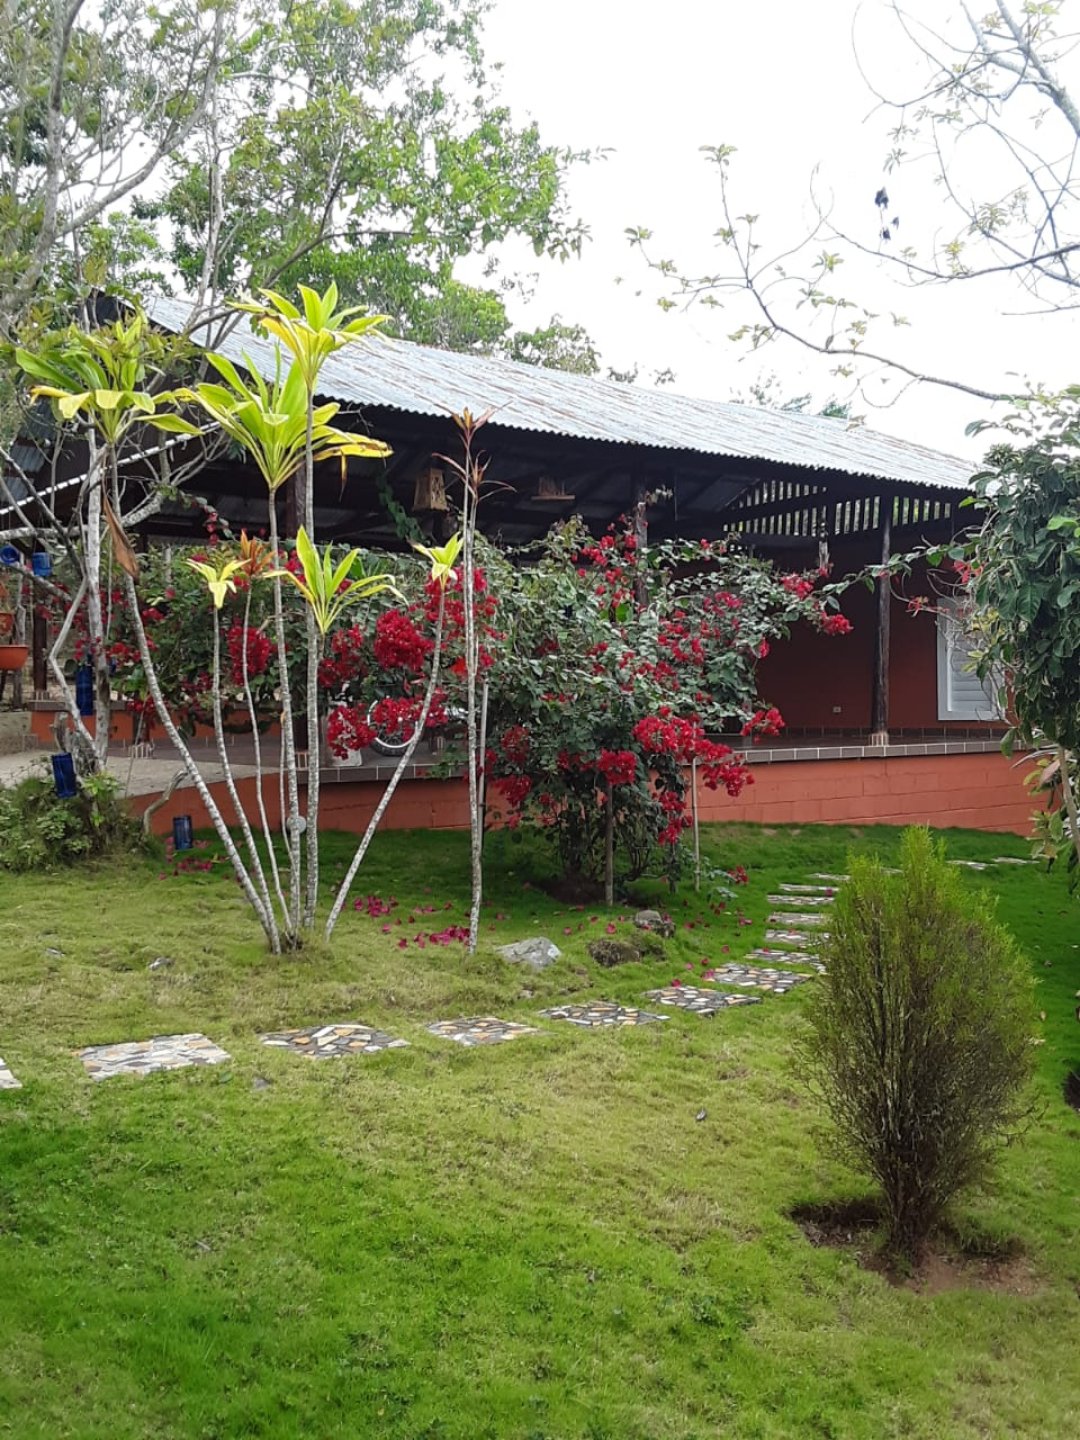 Cabaña rustica en una zona privilegiada de Jarabacoa